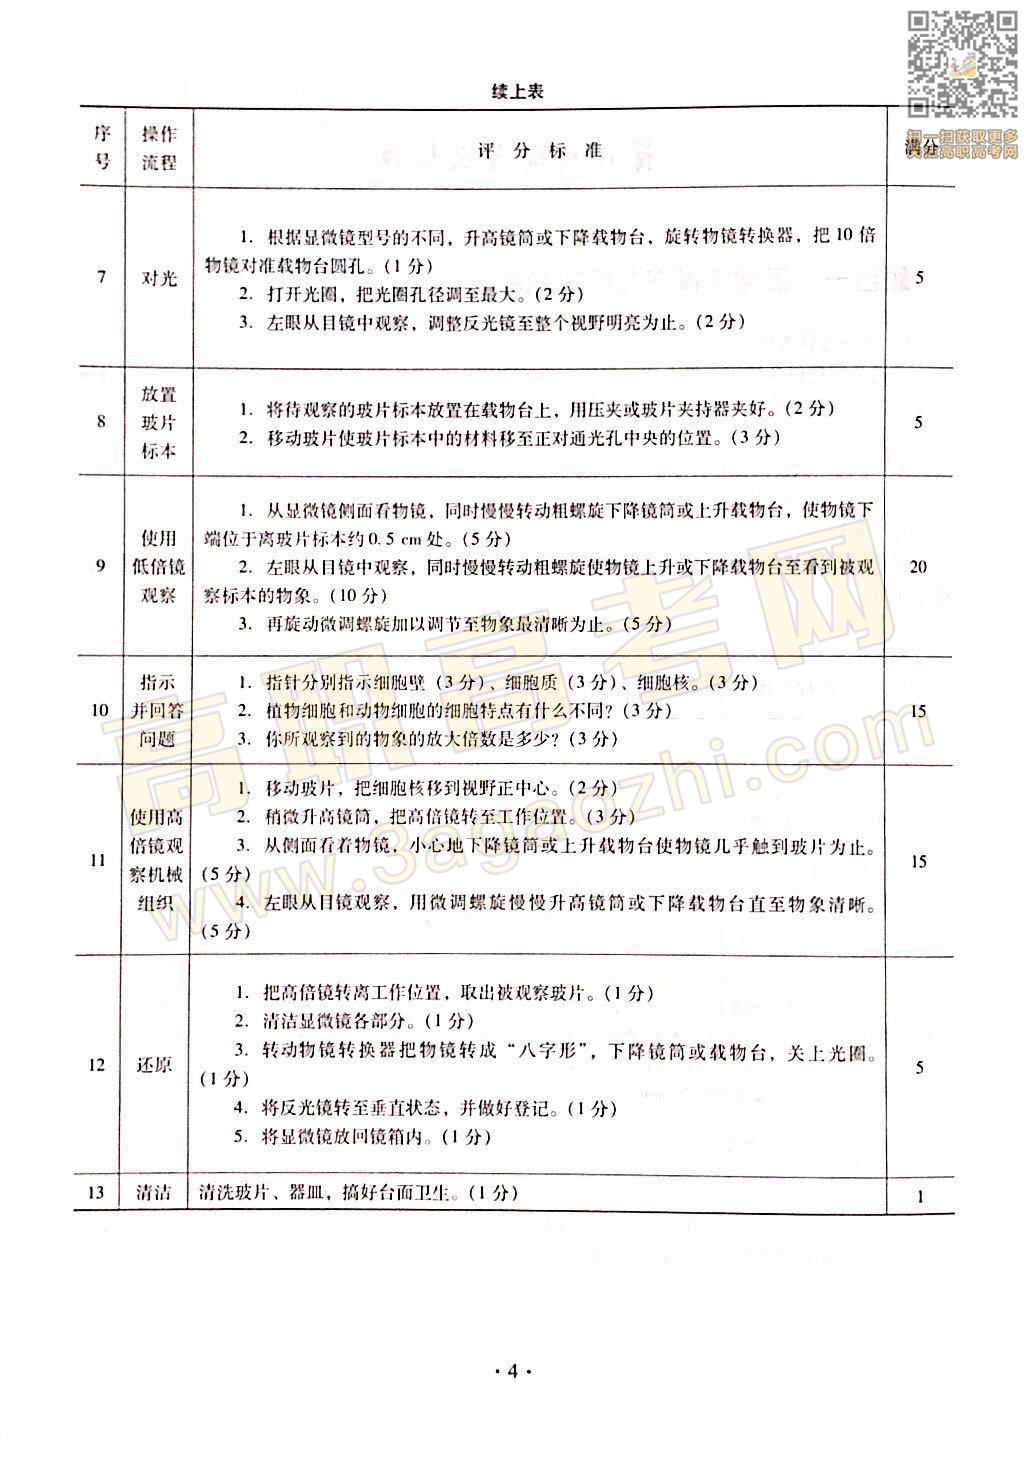 生物技术基础证书,2020年广东中职技能课程考试大纲及样题